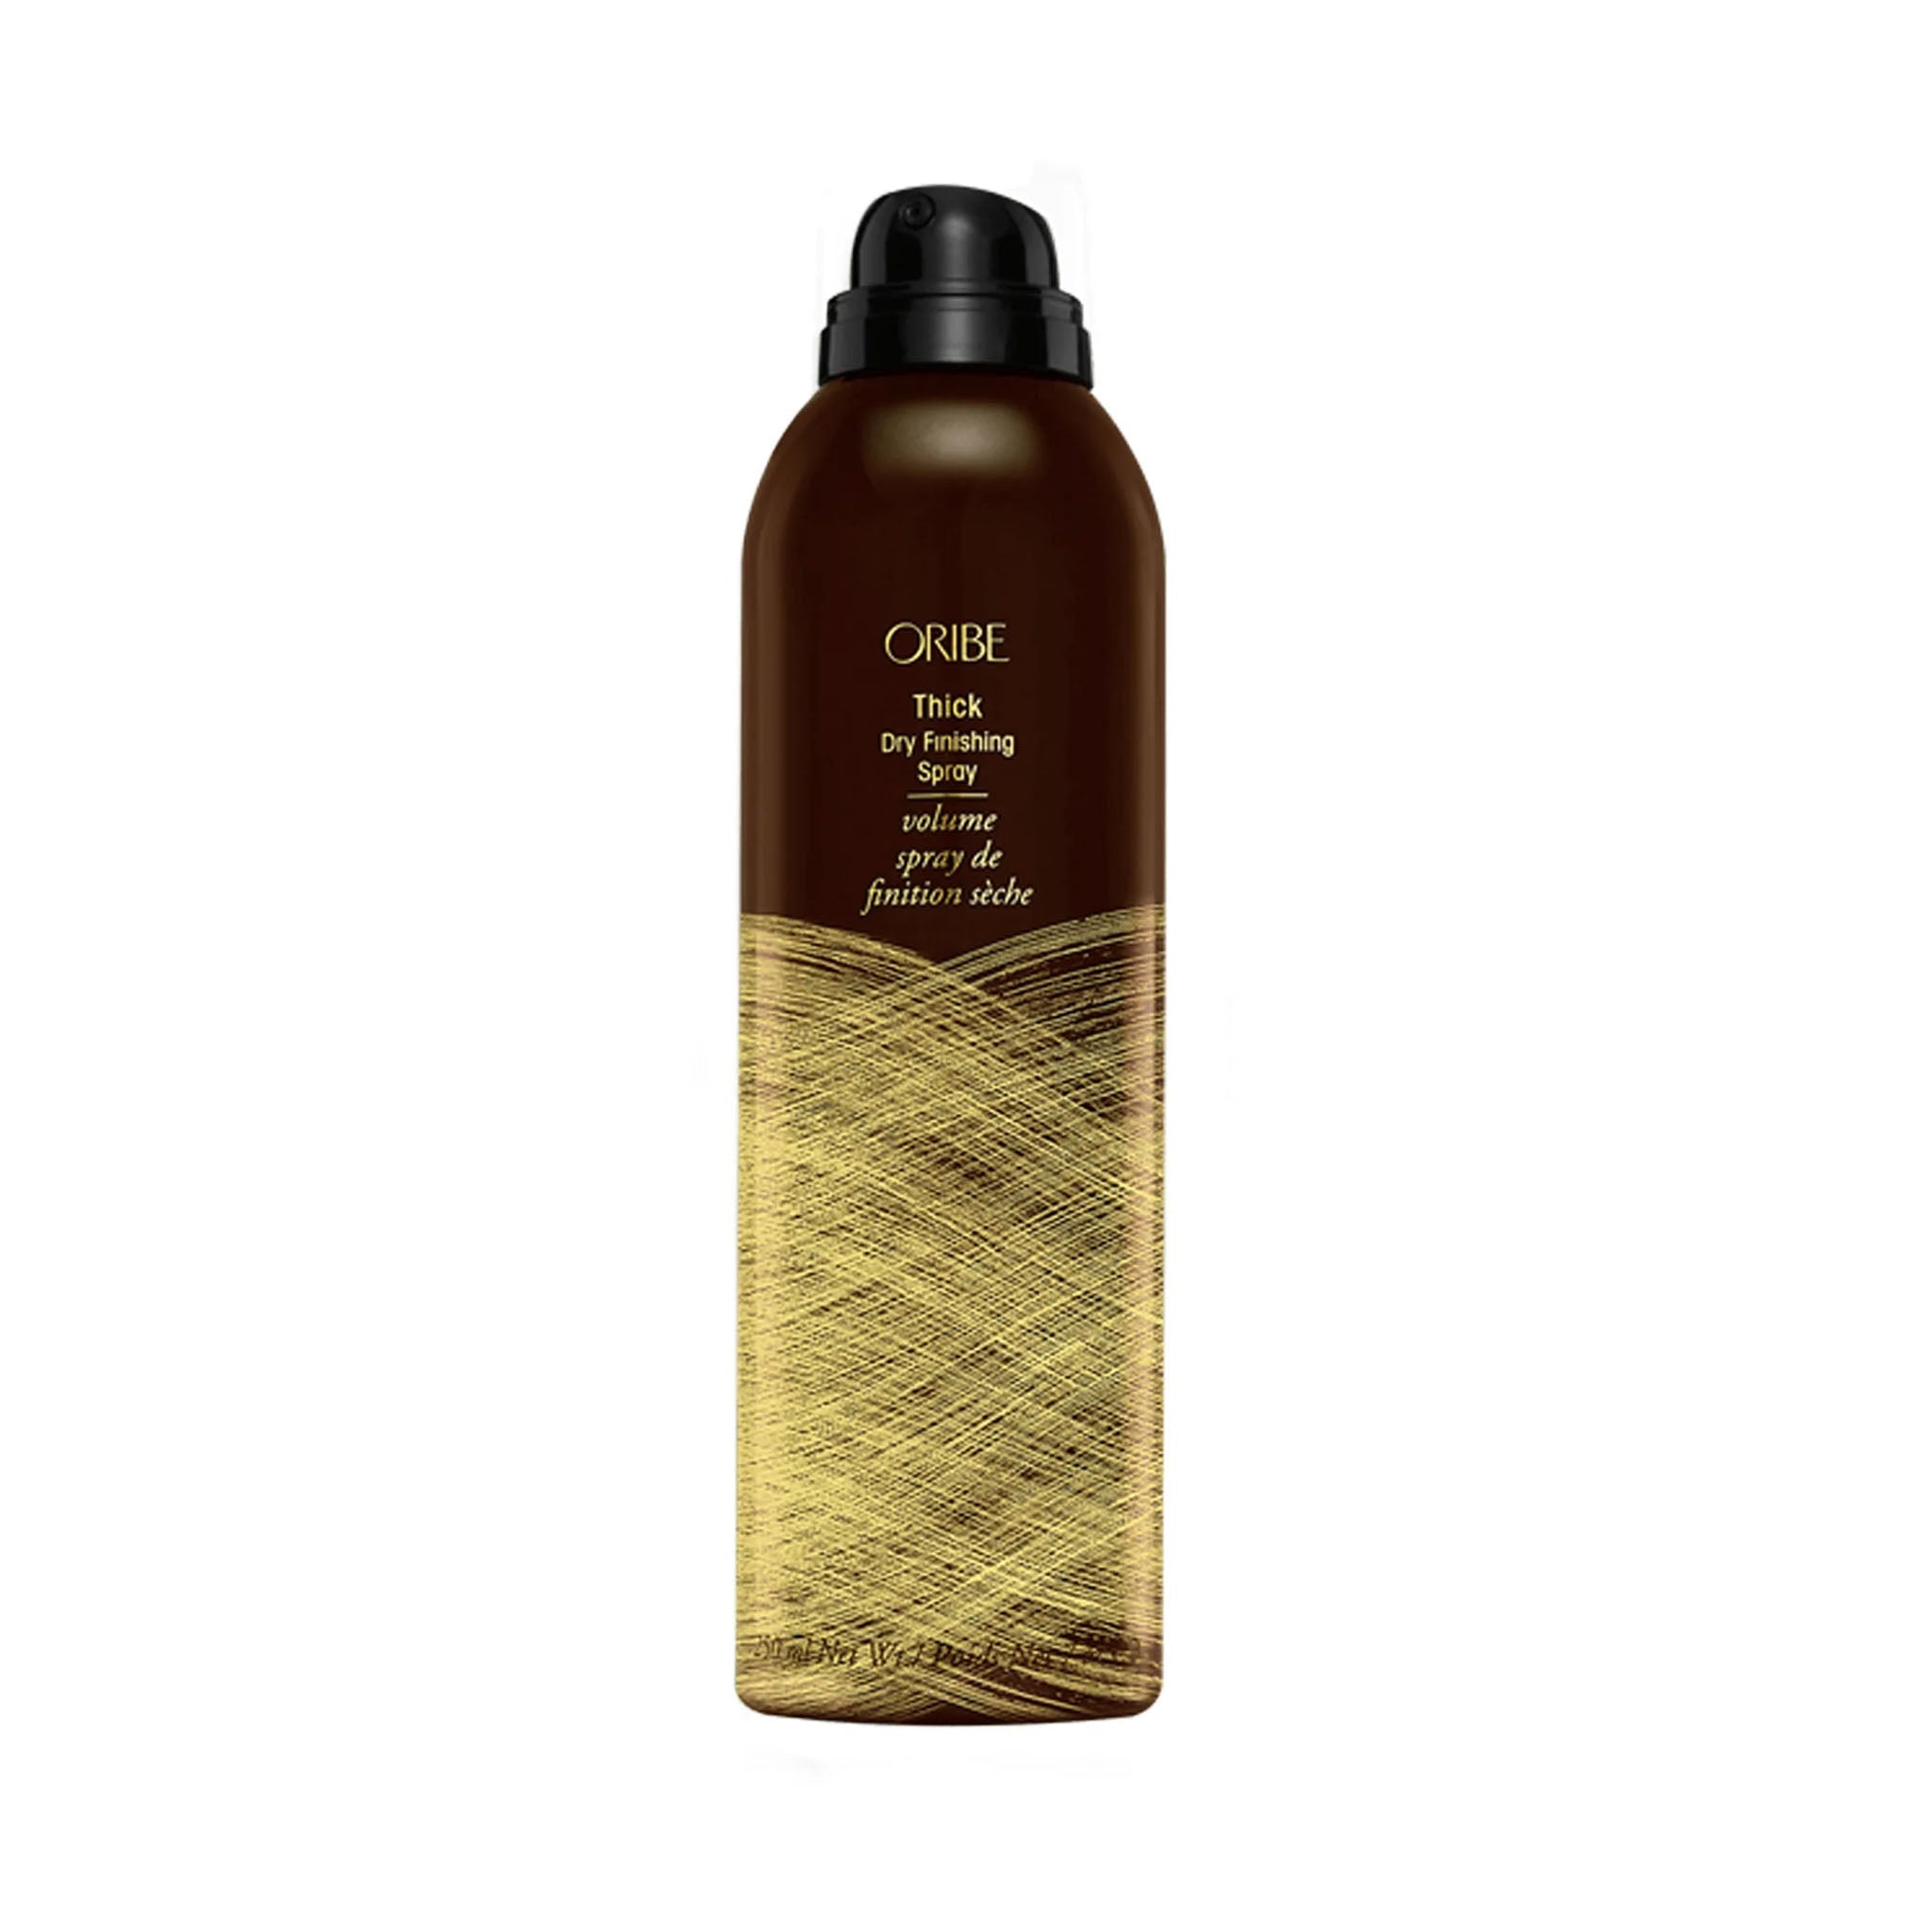 Oribe. Spray de Finition Sèche Volume - 250 ml - Concept C. Shop